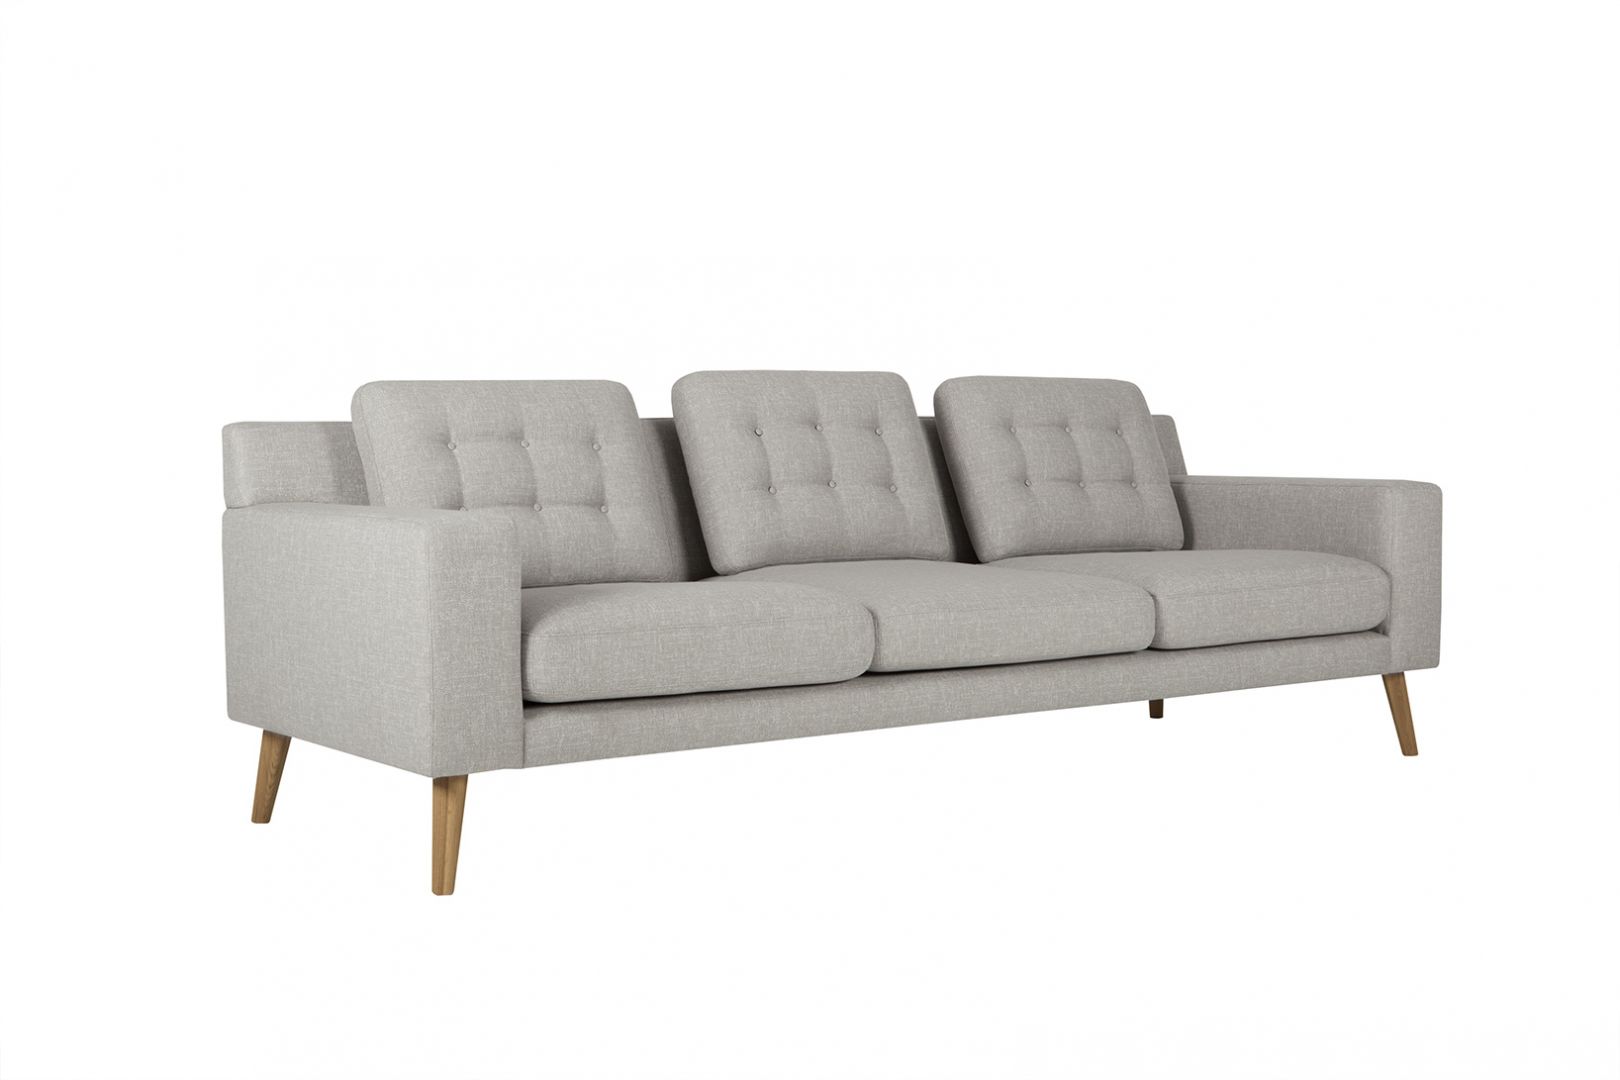 Sofa Axel. Wygodne siedzisko i oparcia zapewniają wygodę siedzenia. Sofa w szarej tkaninie prezentuje się stylowo i elegancko. Fot. Sits 